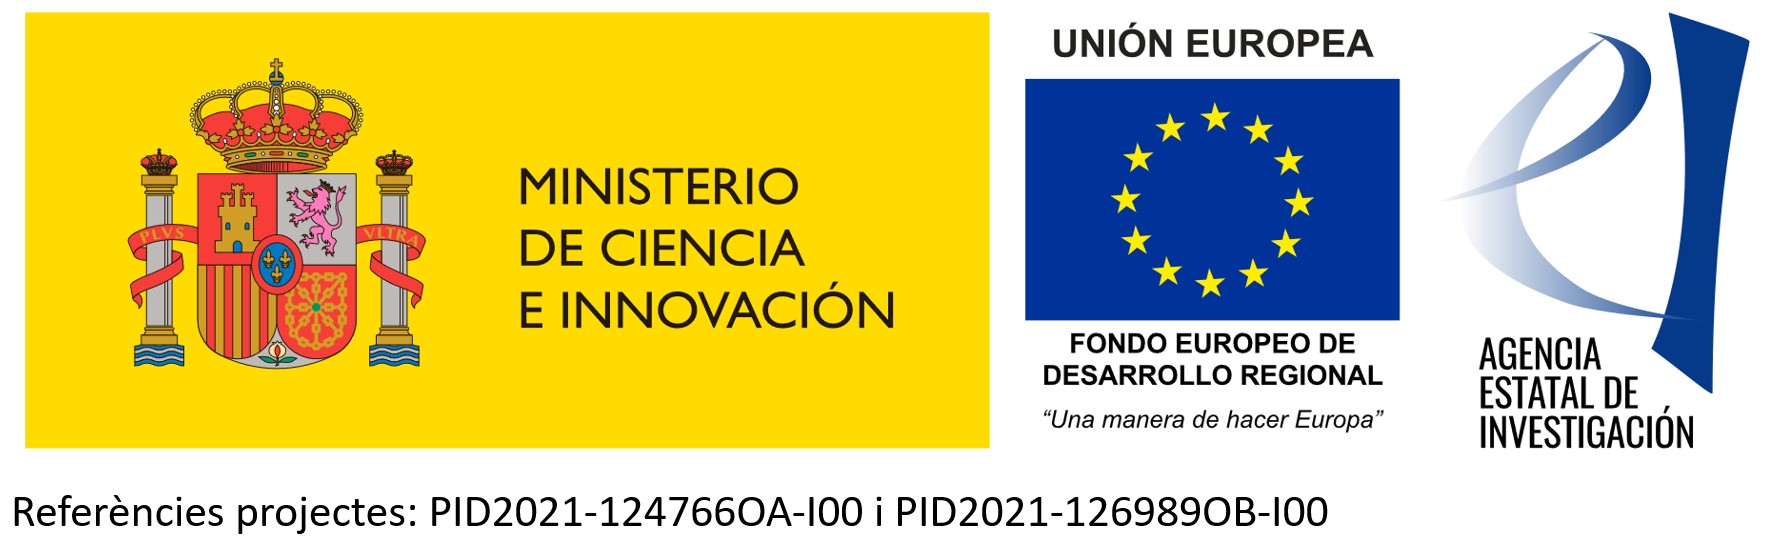 Ministerio de Ciencia e Innovación, Unión Europea Fondo Europeo de Desarrollo Regional "Una manera de hacer Europa" Agencia estatal de investigación PID2021-124766OA-100 i PID2021-126989ob-100 